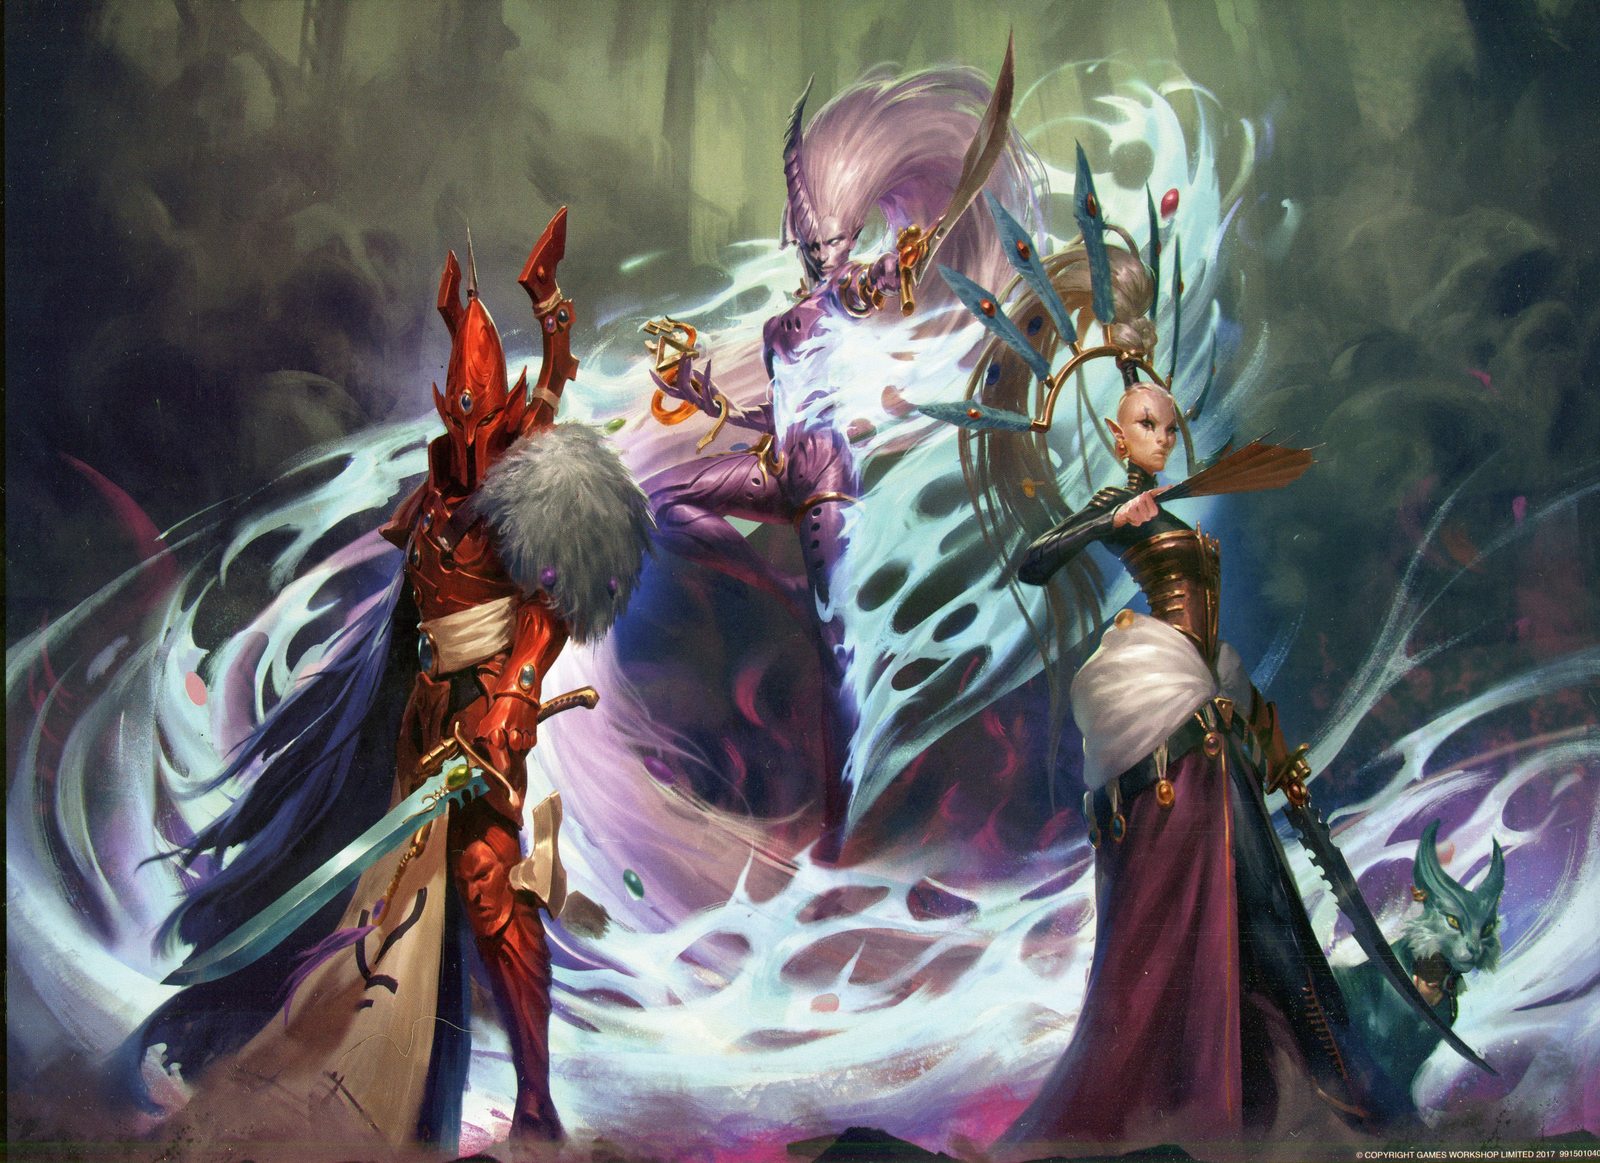 The Ynnari Reborn: Hope for the Aeldari in Warhammer 40K